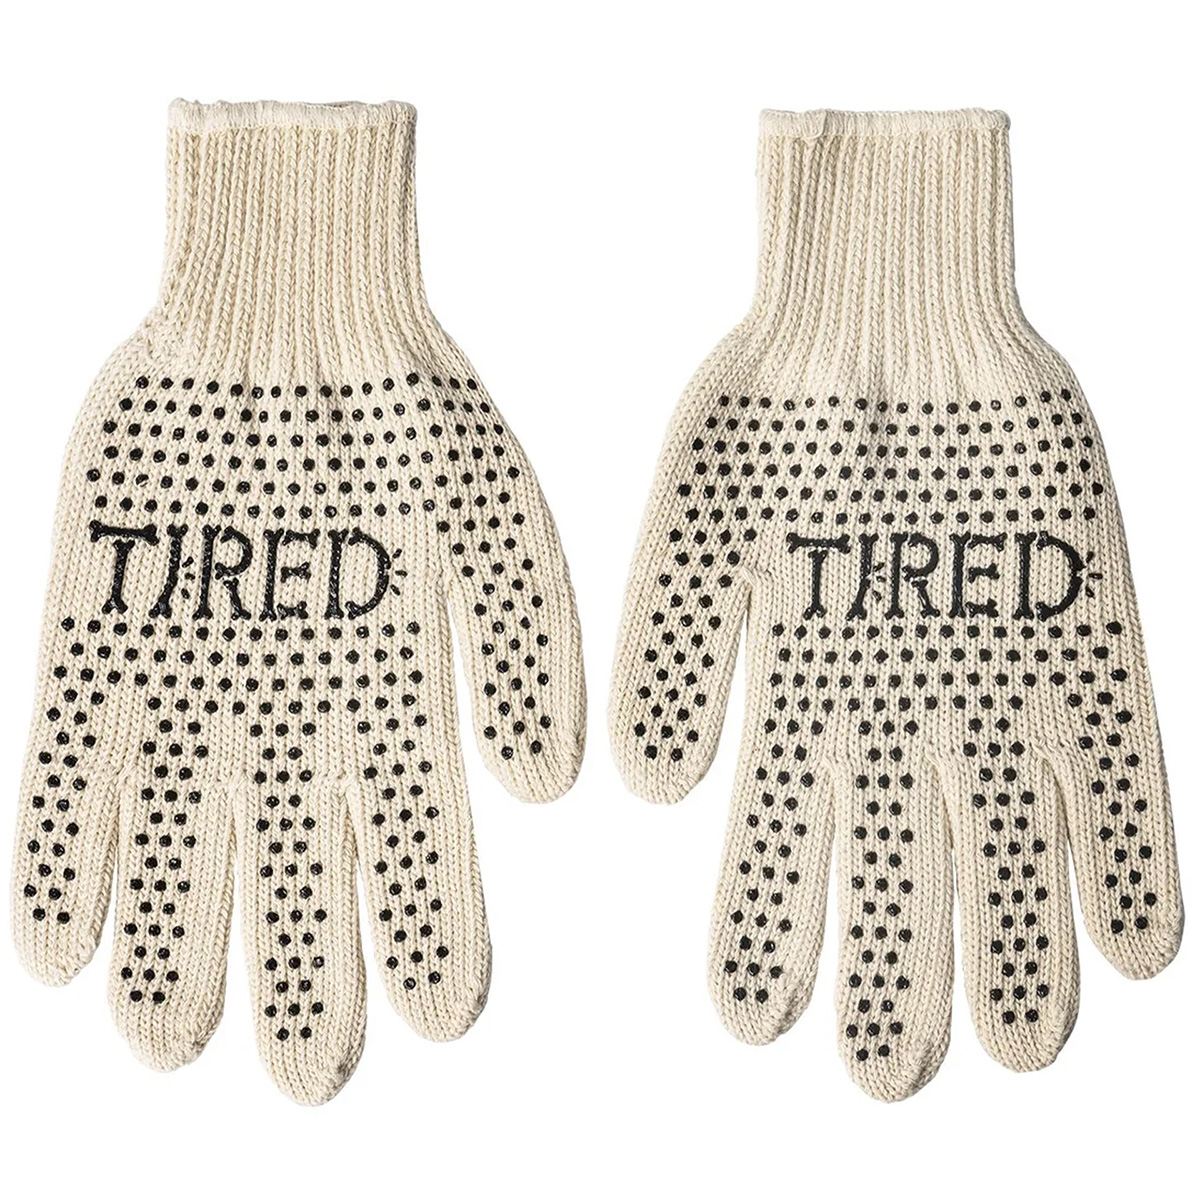 Tired Bones Work Gloves Natural/Black